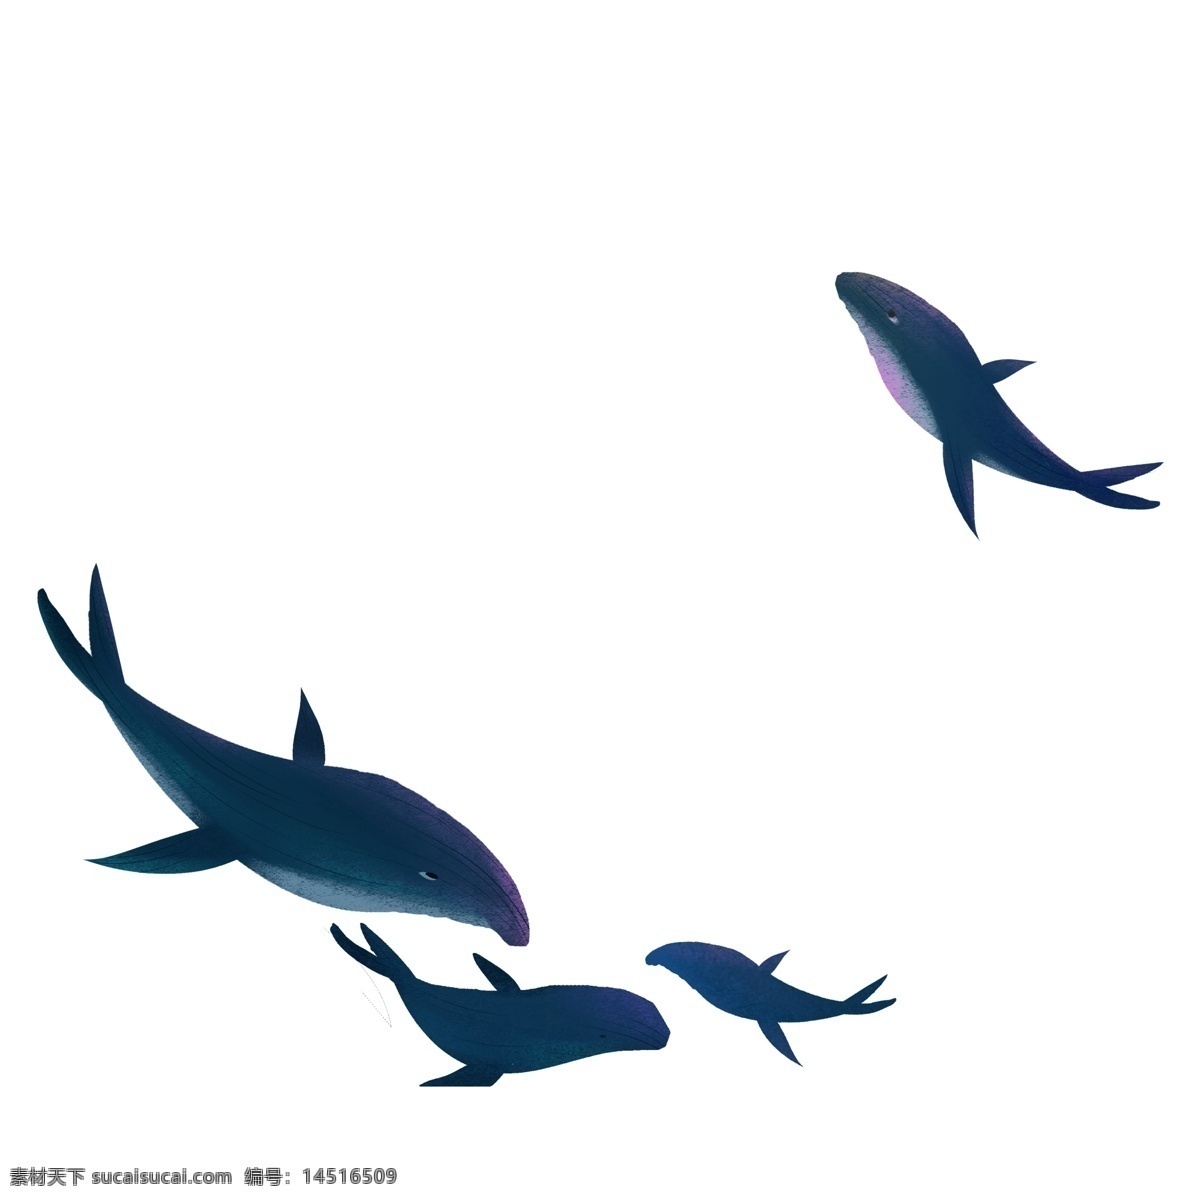 卡通 深蓝色 海豚 免 扣 图 卡通海豚 游 海豚免扣图 跳起来的海豚 免扣图